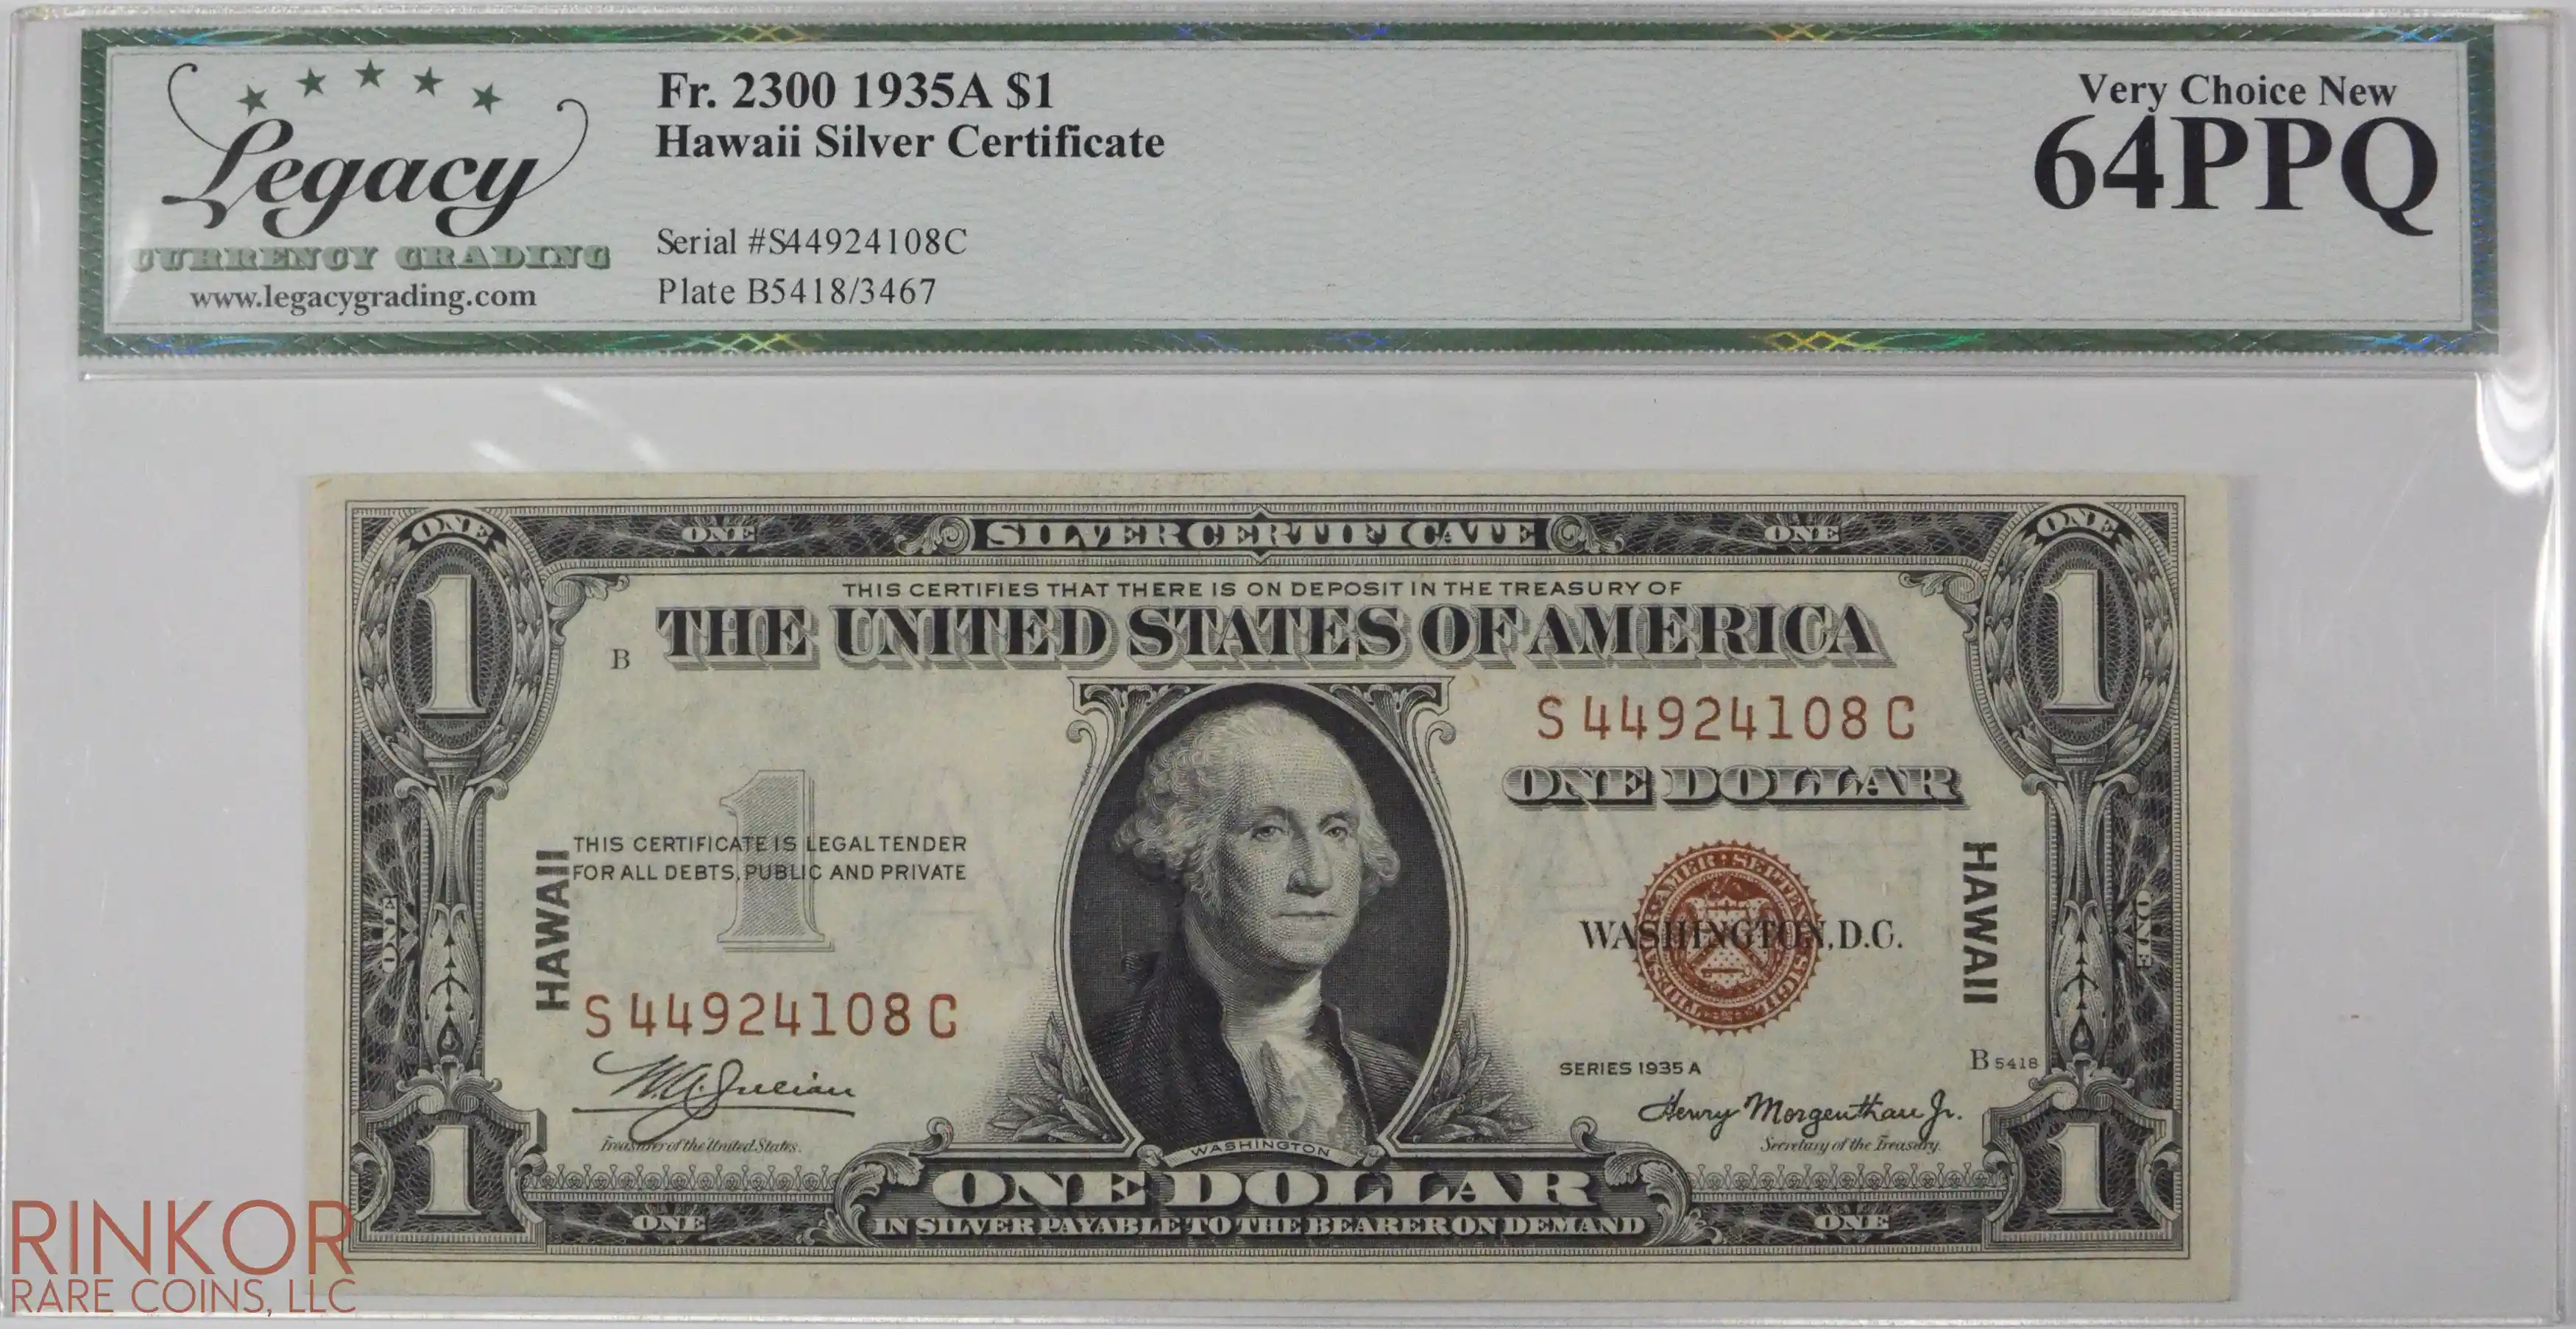 1935A $1 Fr. 2300 Hawaii Silver Certificate LCG CU 64 PPQ